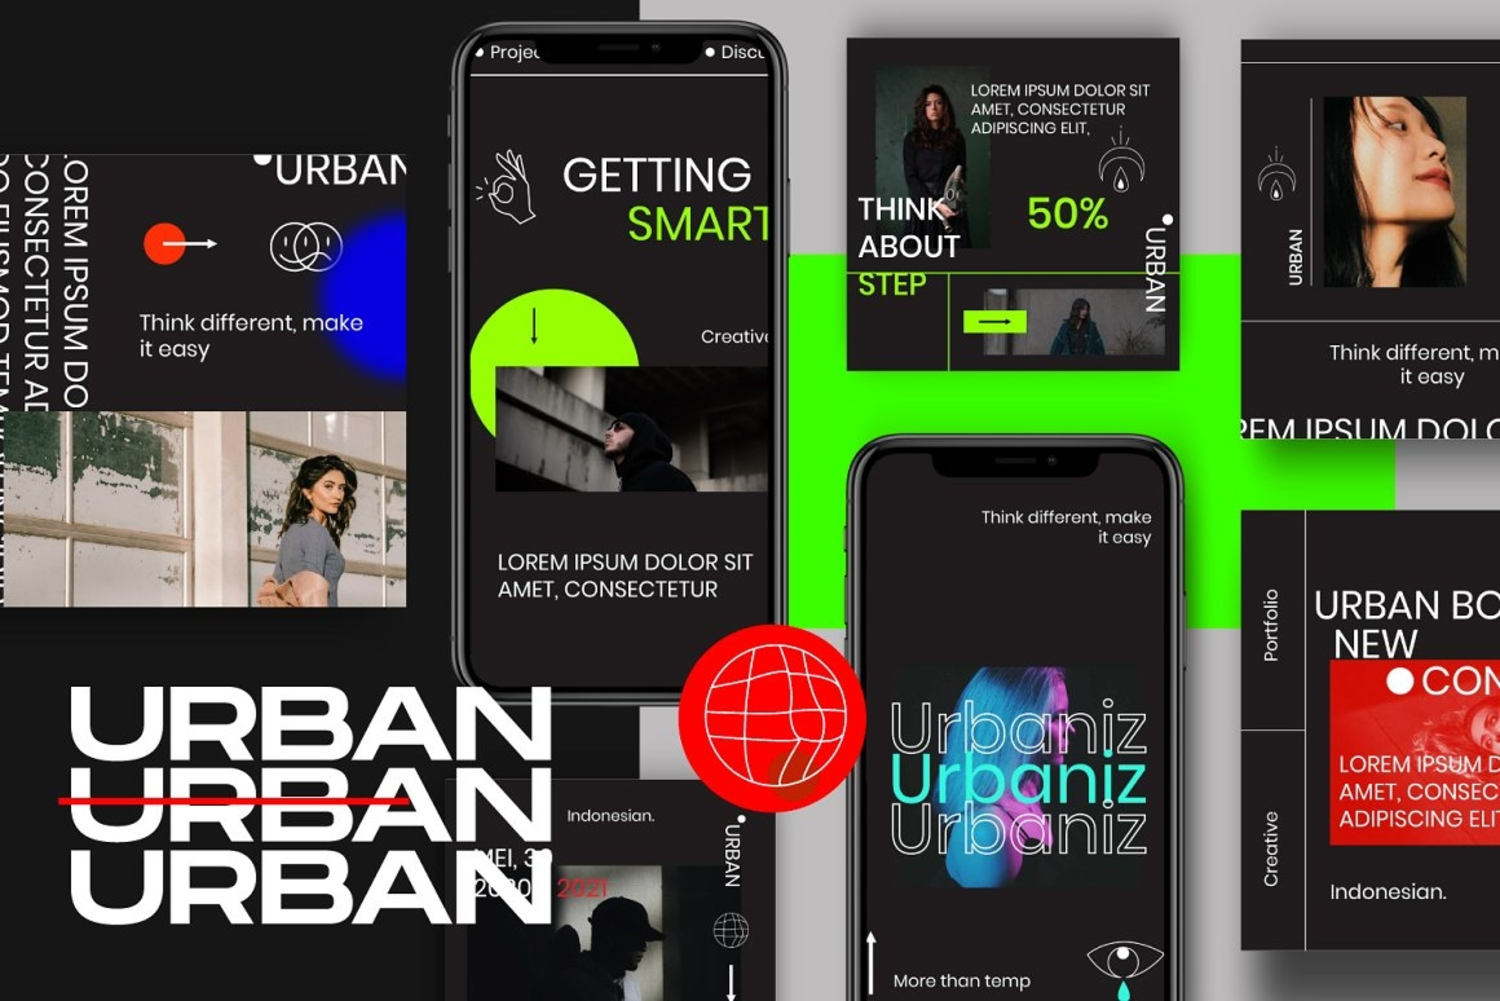 372 潮流黑色系品牌推广新媒体海报PSD模板 URBAN-Social Media Brand